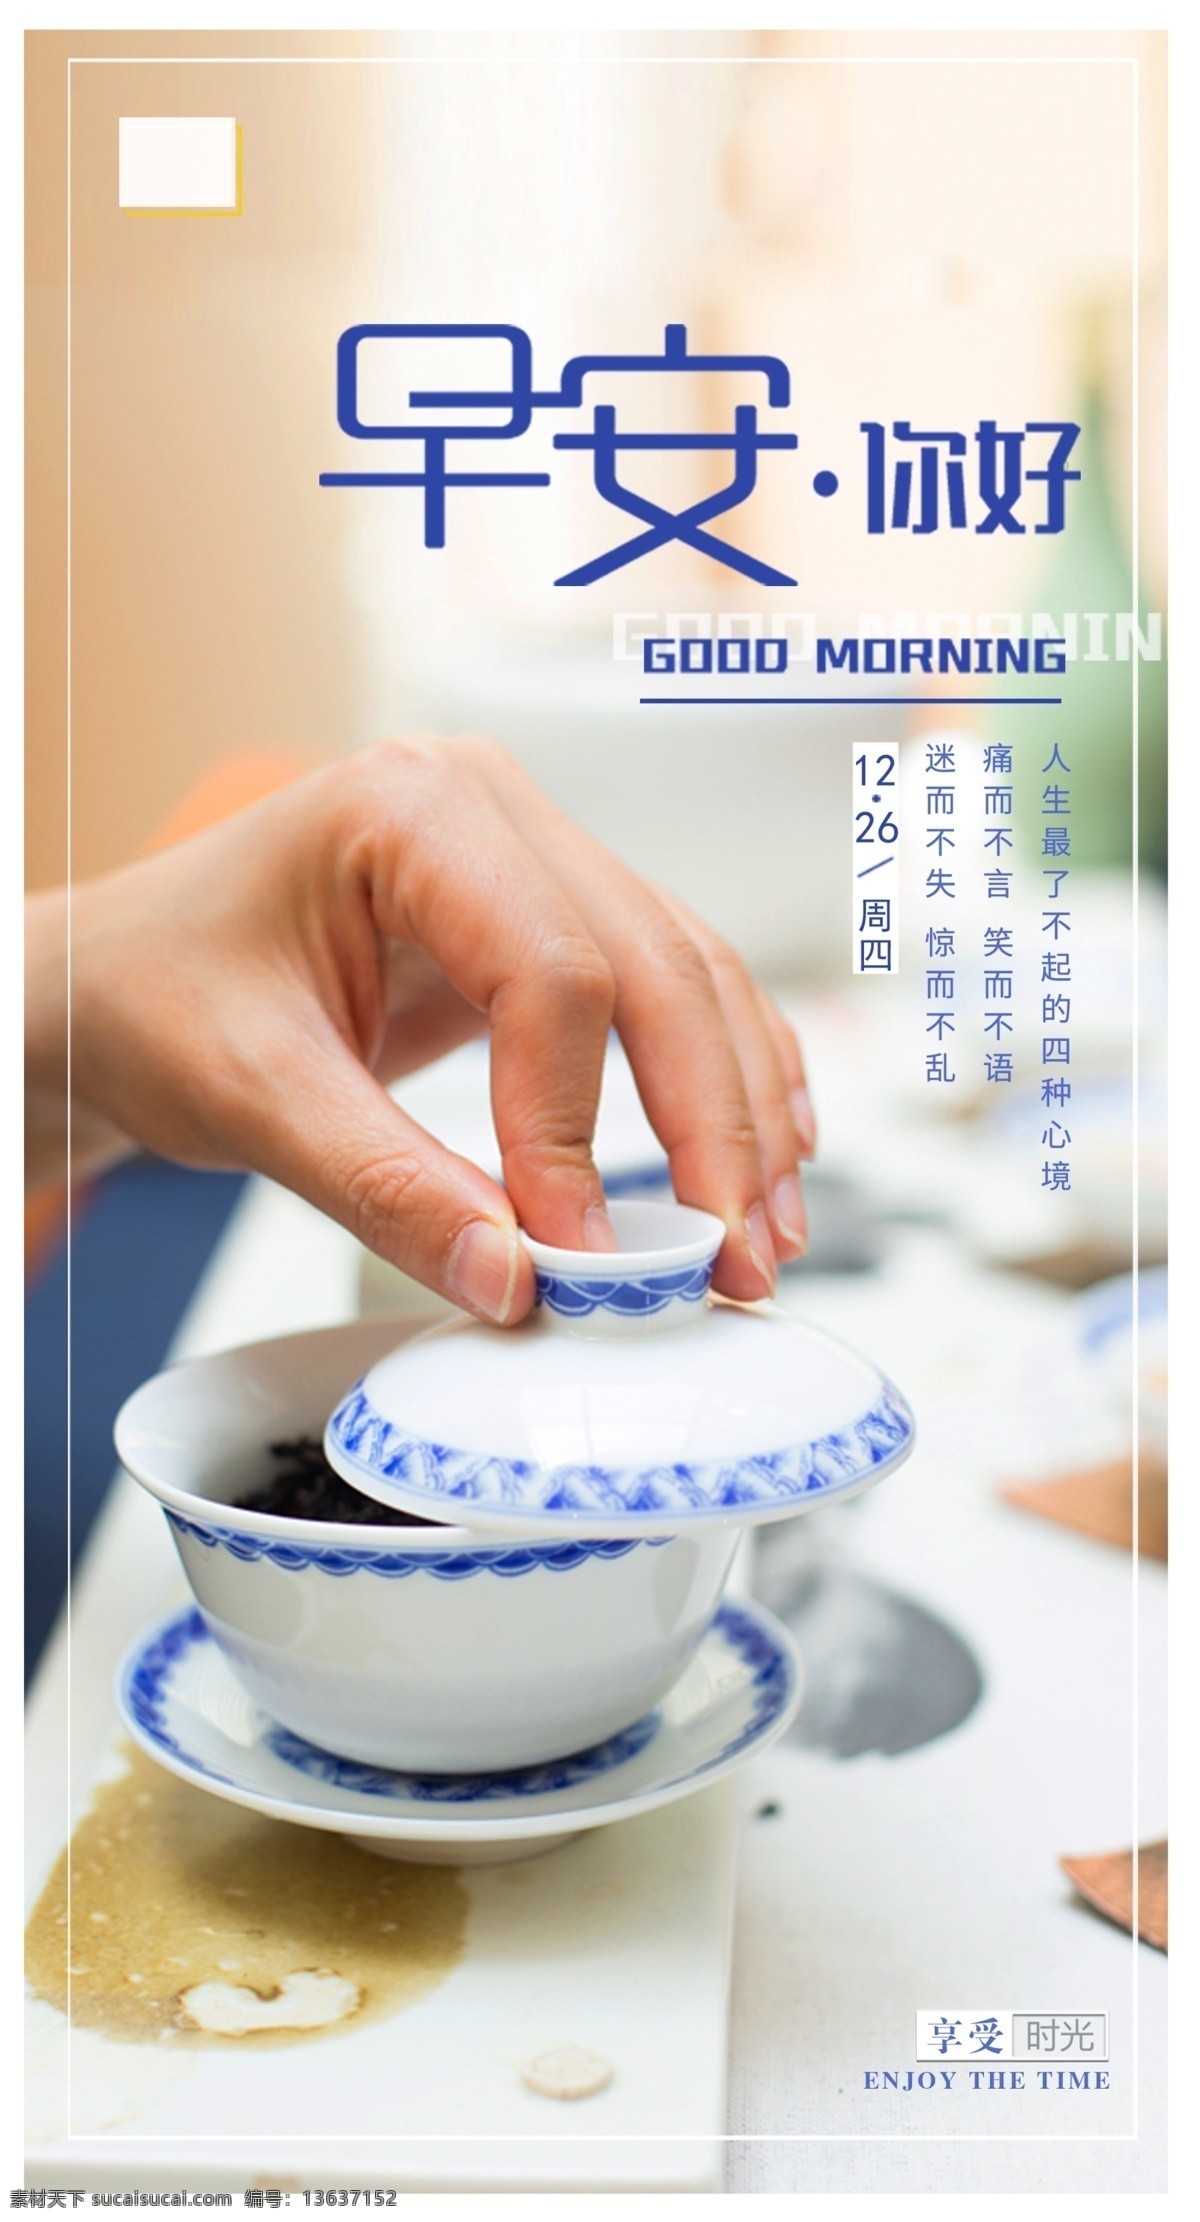 早安 正能量 每日一语 早上好 感恩 茶叶 茶 问候 日签 签到 打卡